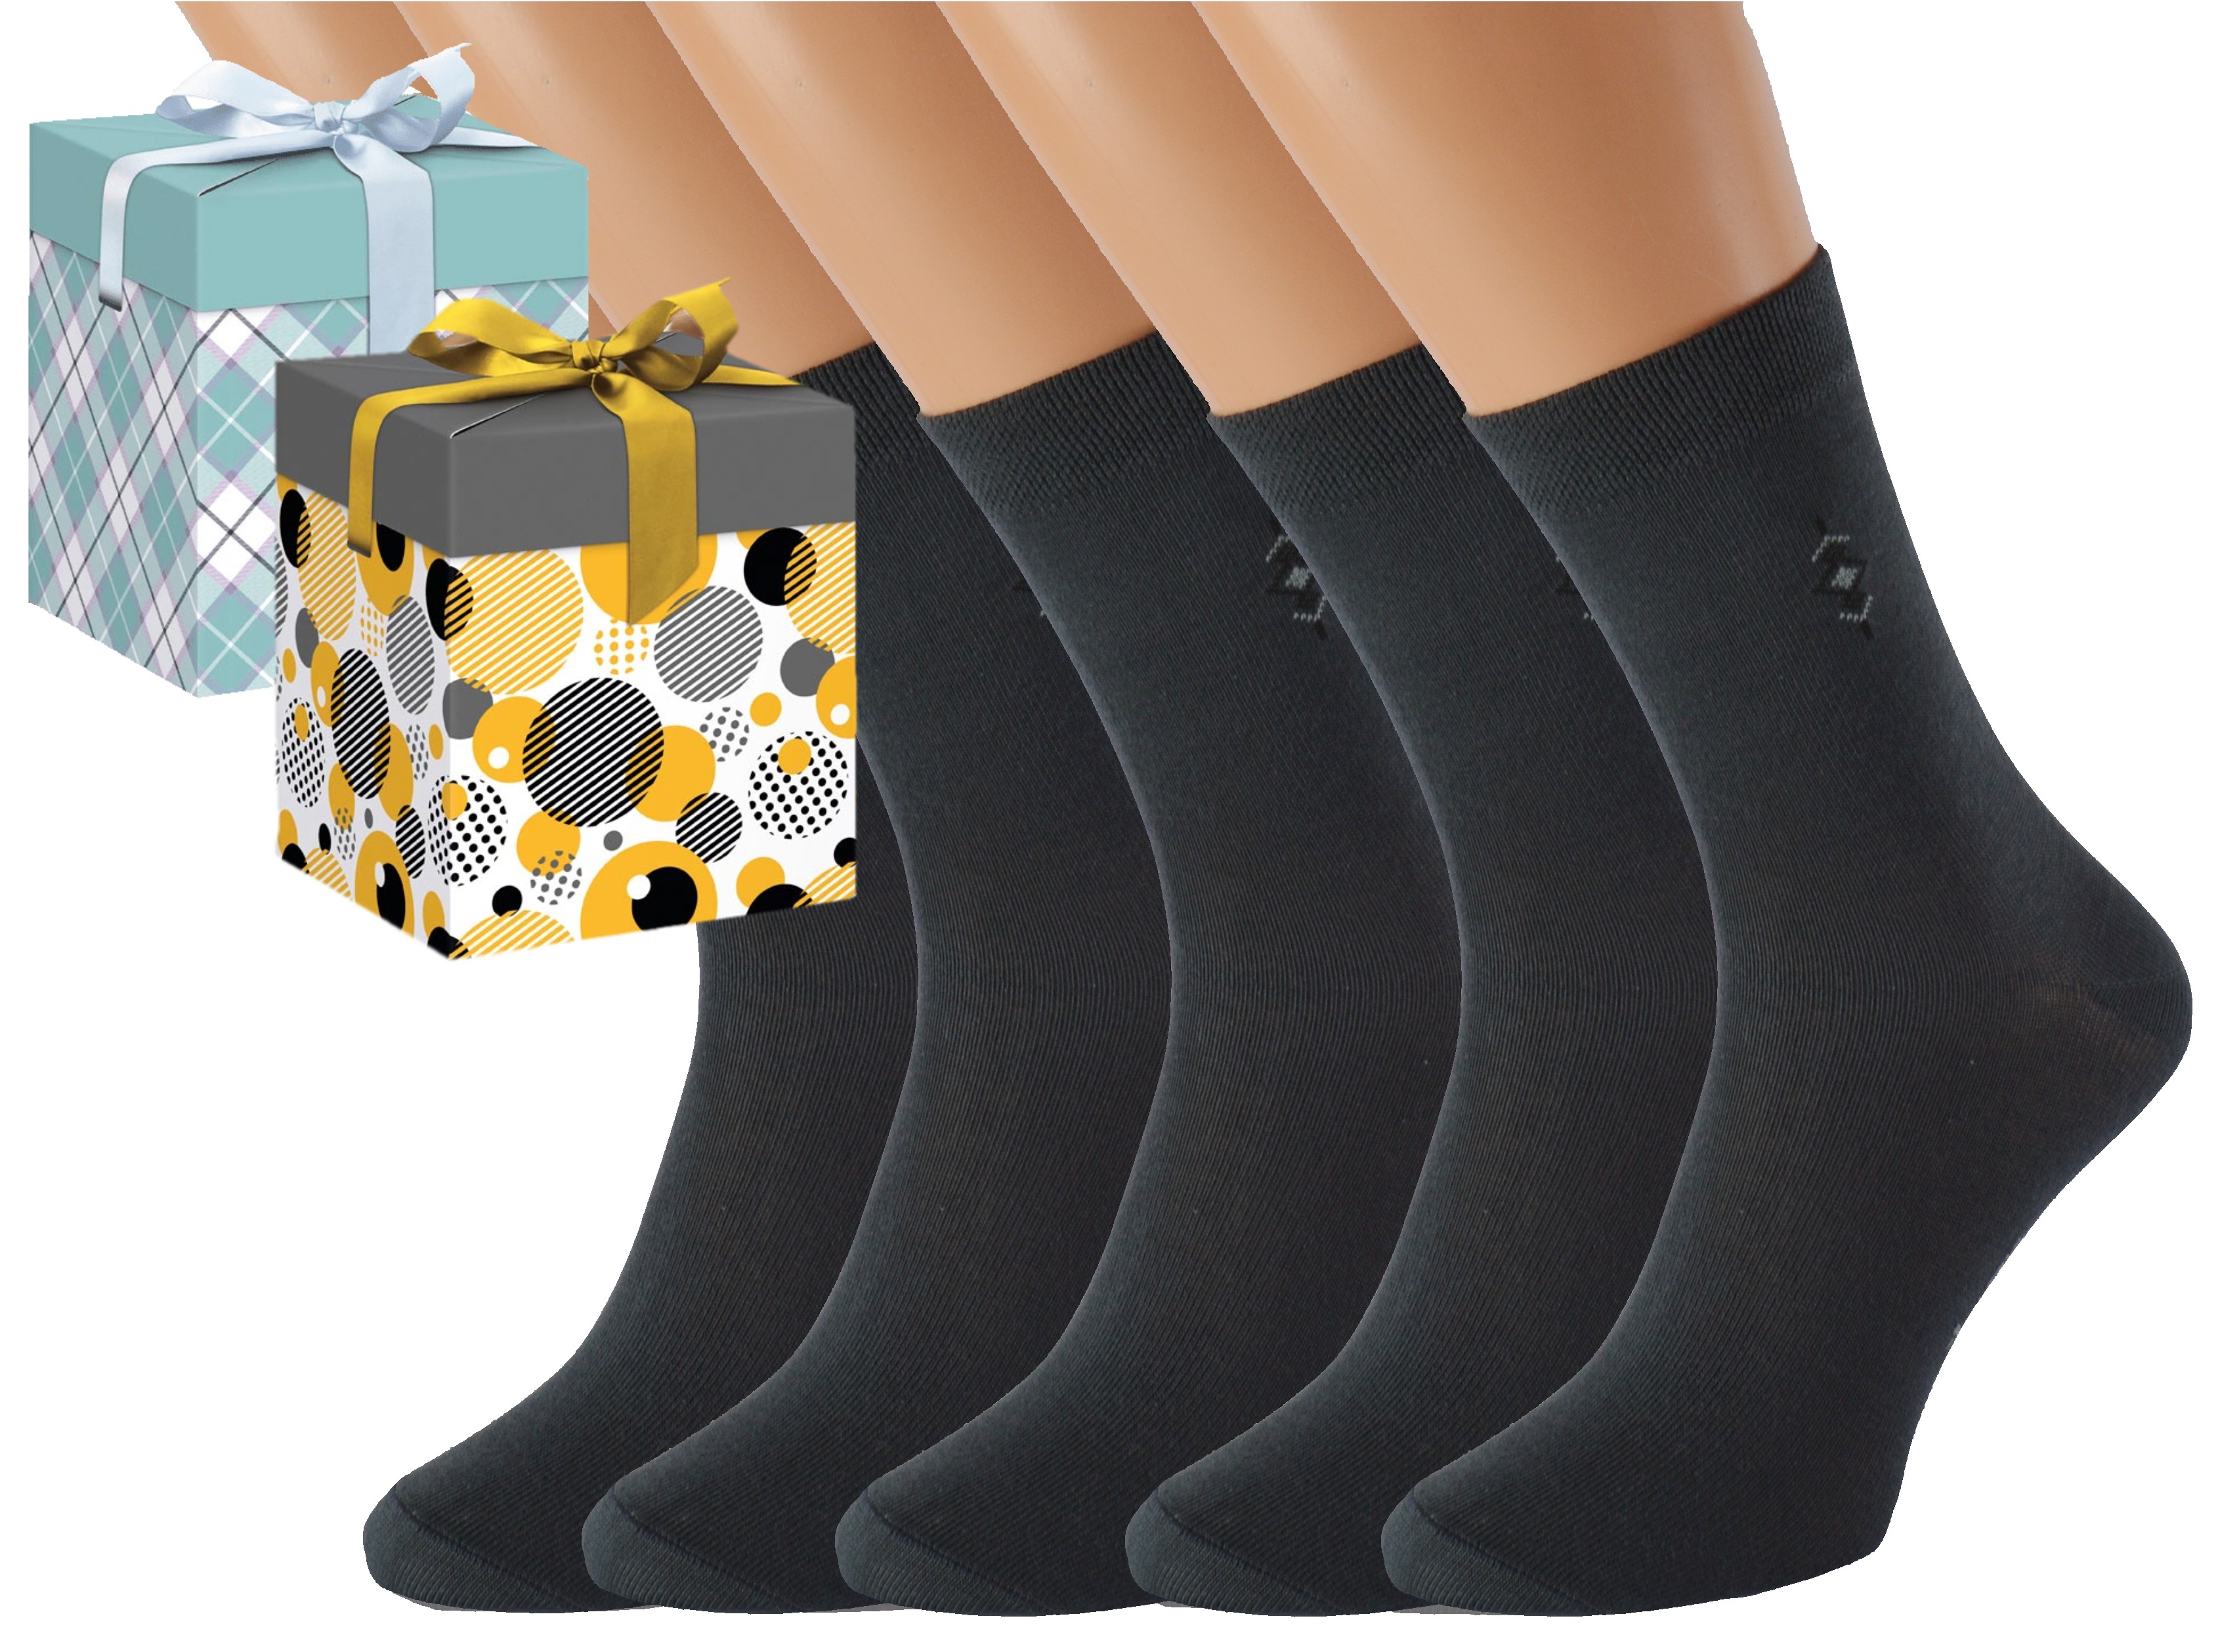 Dárkové balení 5 párů společenských ponožek BOBOLYC Barva: Tmavě šedé, Velikost: EUR 35-38 (UK 3-5), Zvolte variantu dárkového balení: Zlatá s kruhy